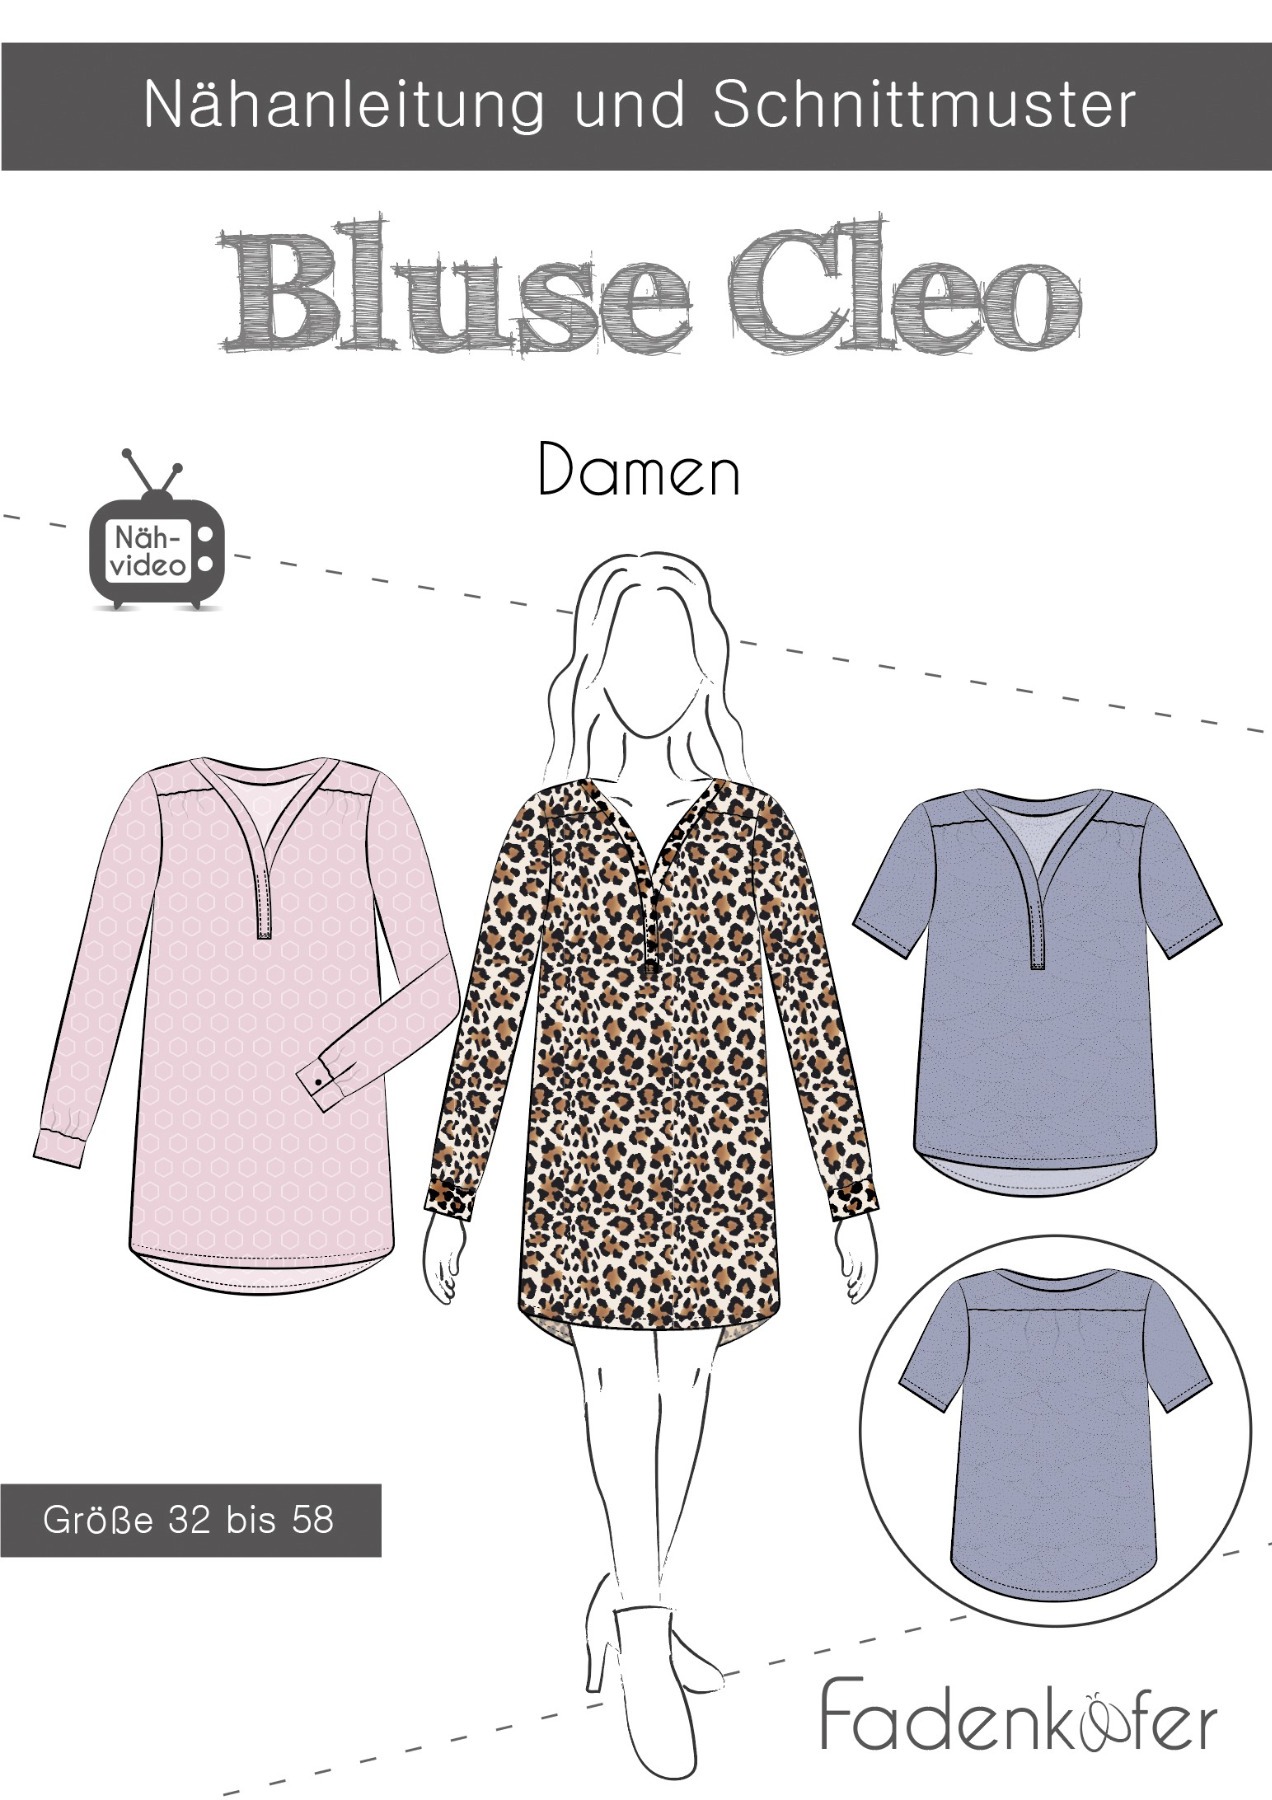 Schnittmuster Papierschnitt Mehrgrössenschnitt Bluse Cleo Damen von Fadenkäfer Kleid Gr 32 - 58